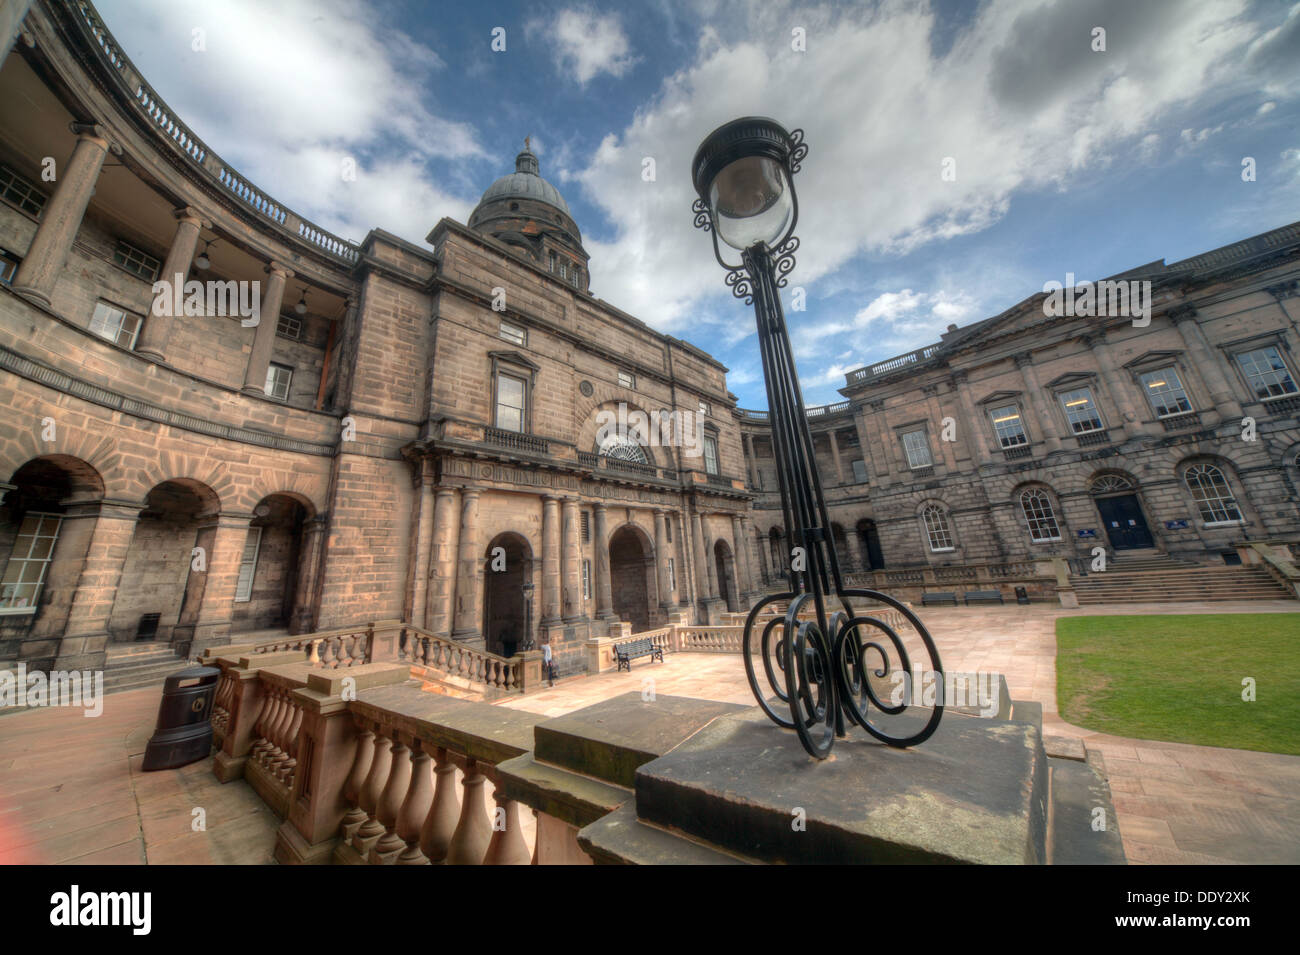 L'Université d'Édimbourg en Écosse Lothian South College UK wide view avec lampe à l'ancienne Banque D'Images